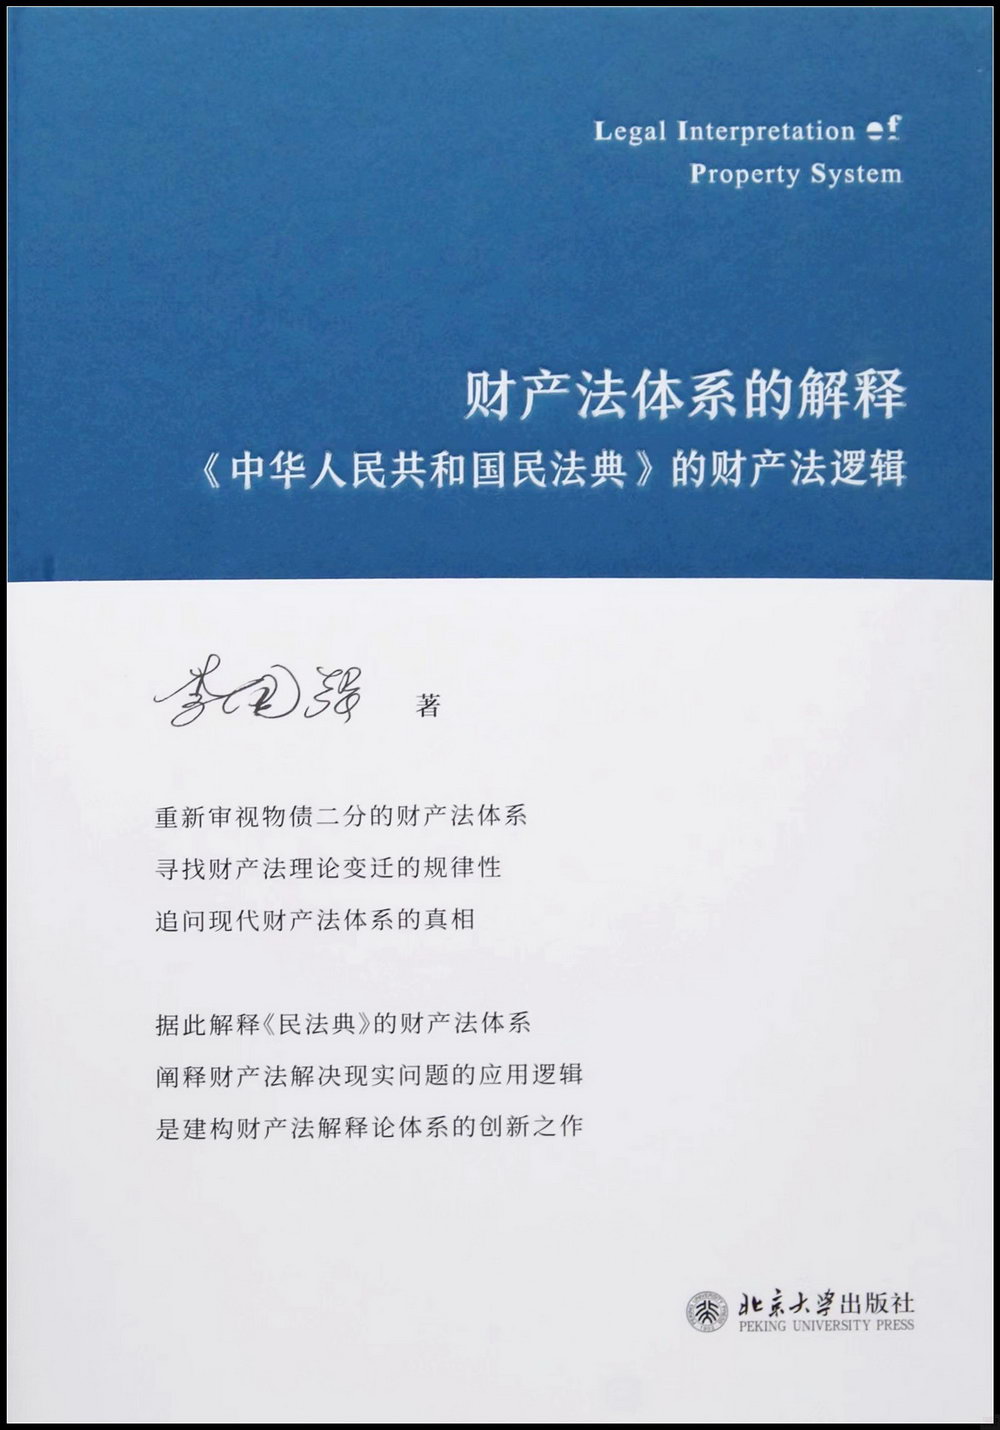 財產法體系的解釋：《中華人民共和國民法典》的財產法邏輯